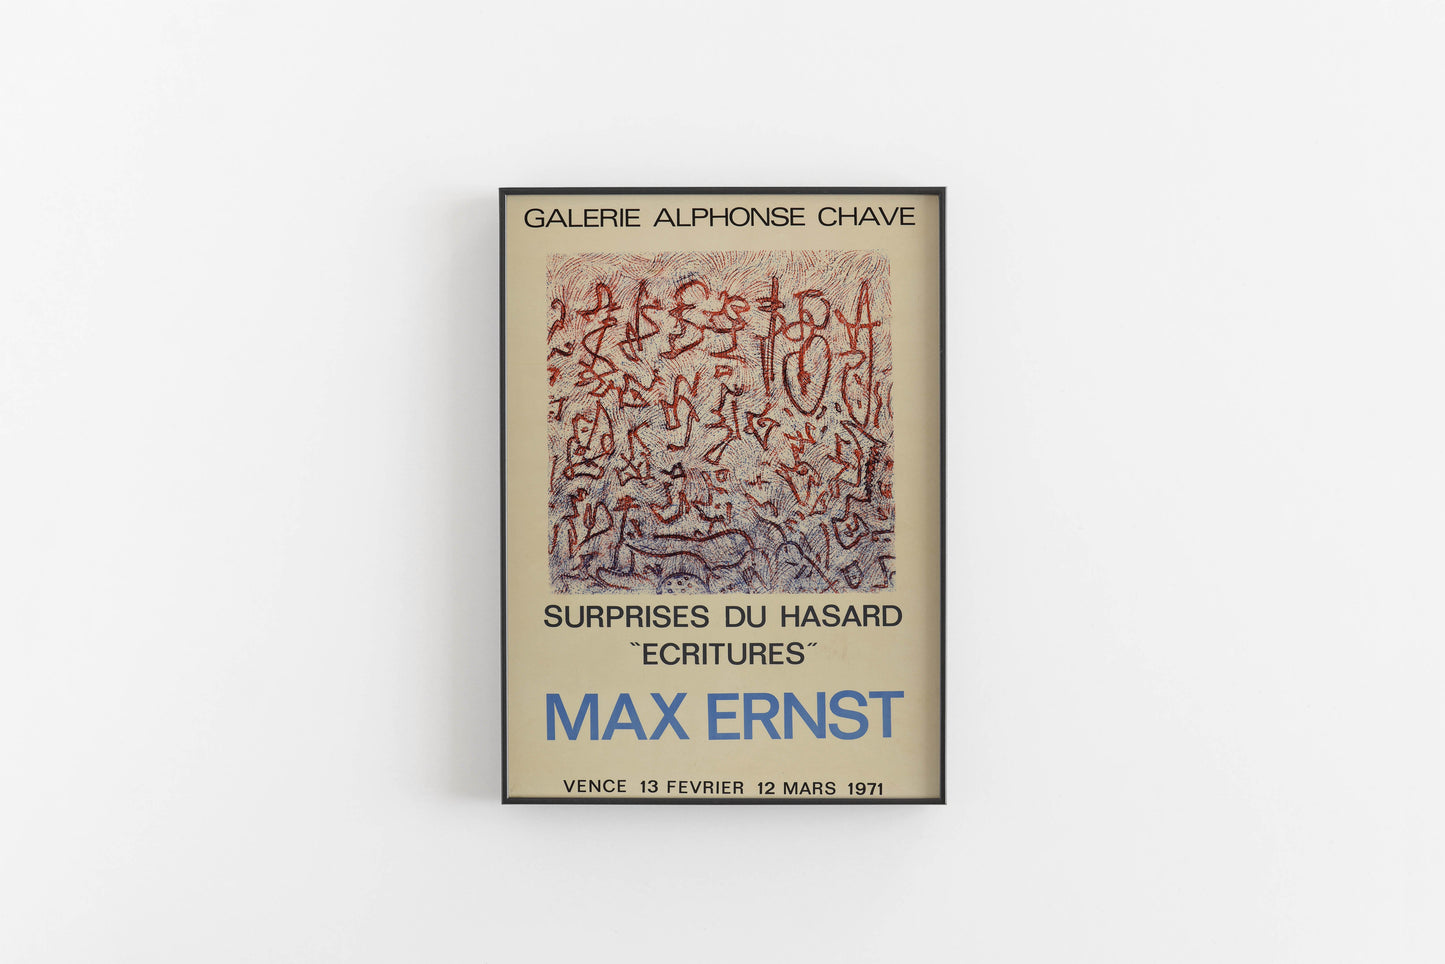 Max Ernst exhibition poster